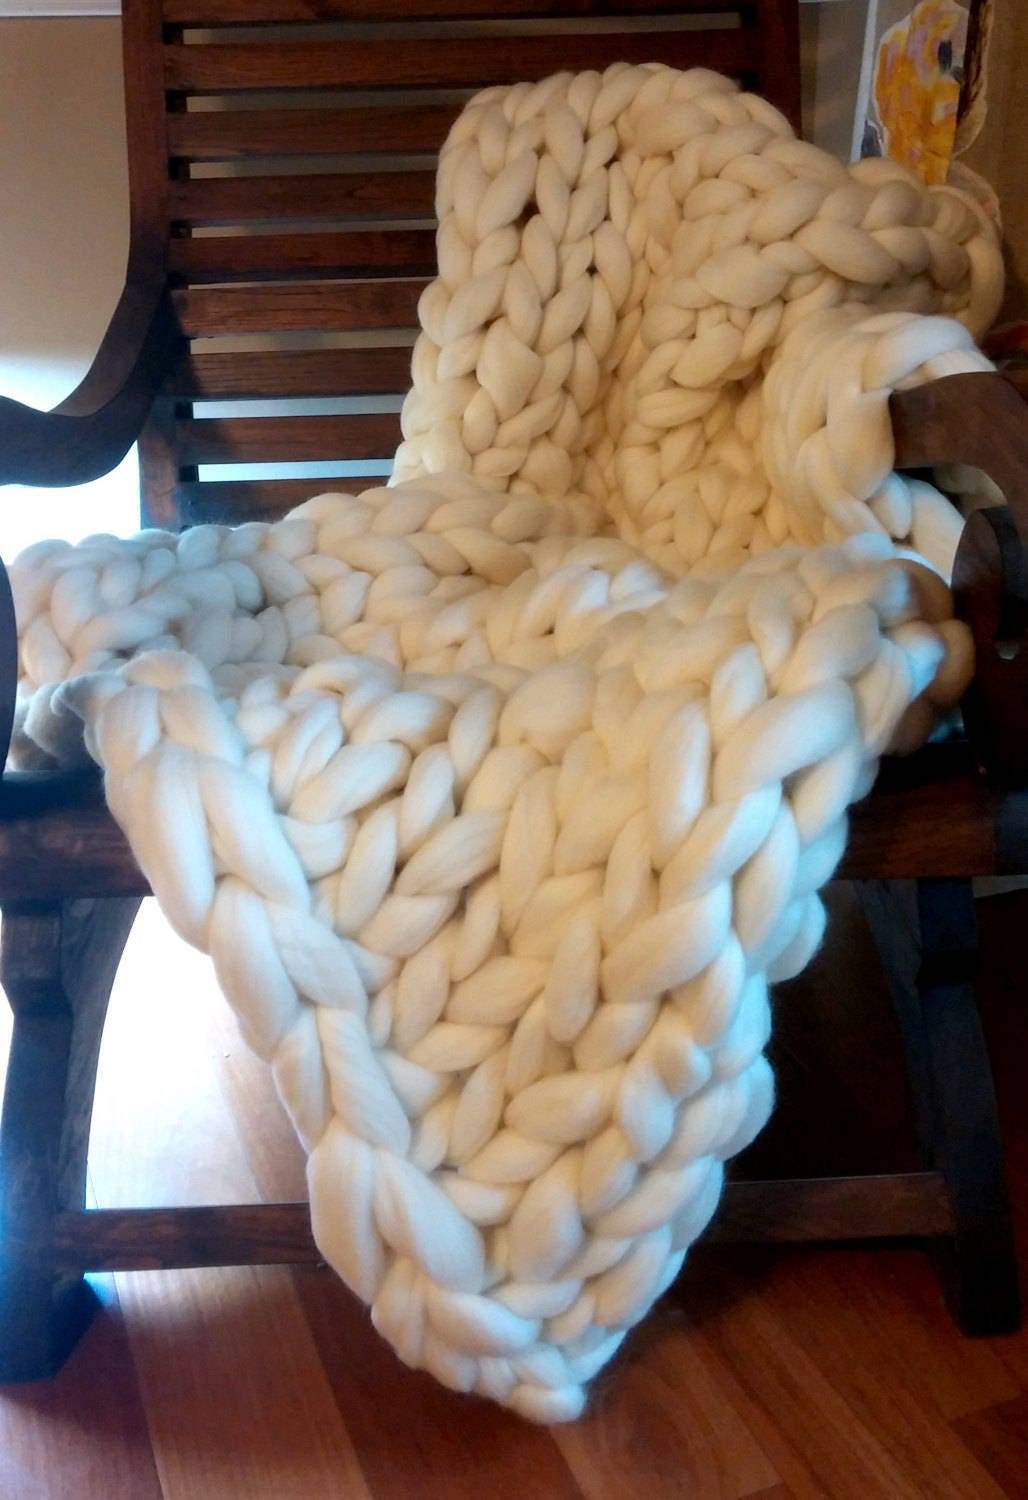 Chunky Knit Blanket, SALE TODAY ONLY!   Ivory Chunky Knit Wool Blanket 40" x 60" Throw Blanket Giant Knit, Chunky Merino Blanket Ecru White